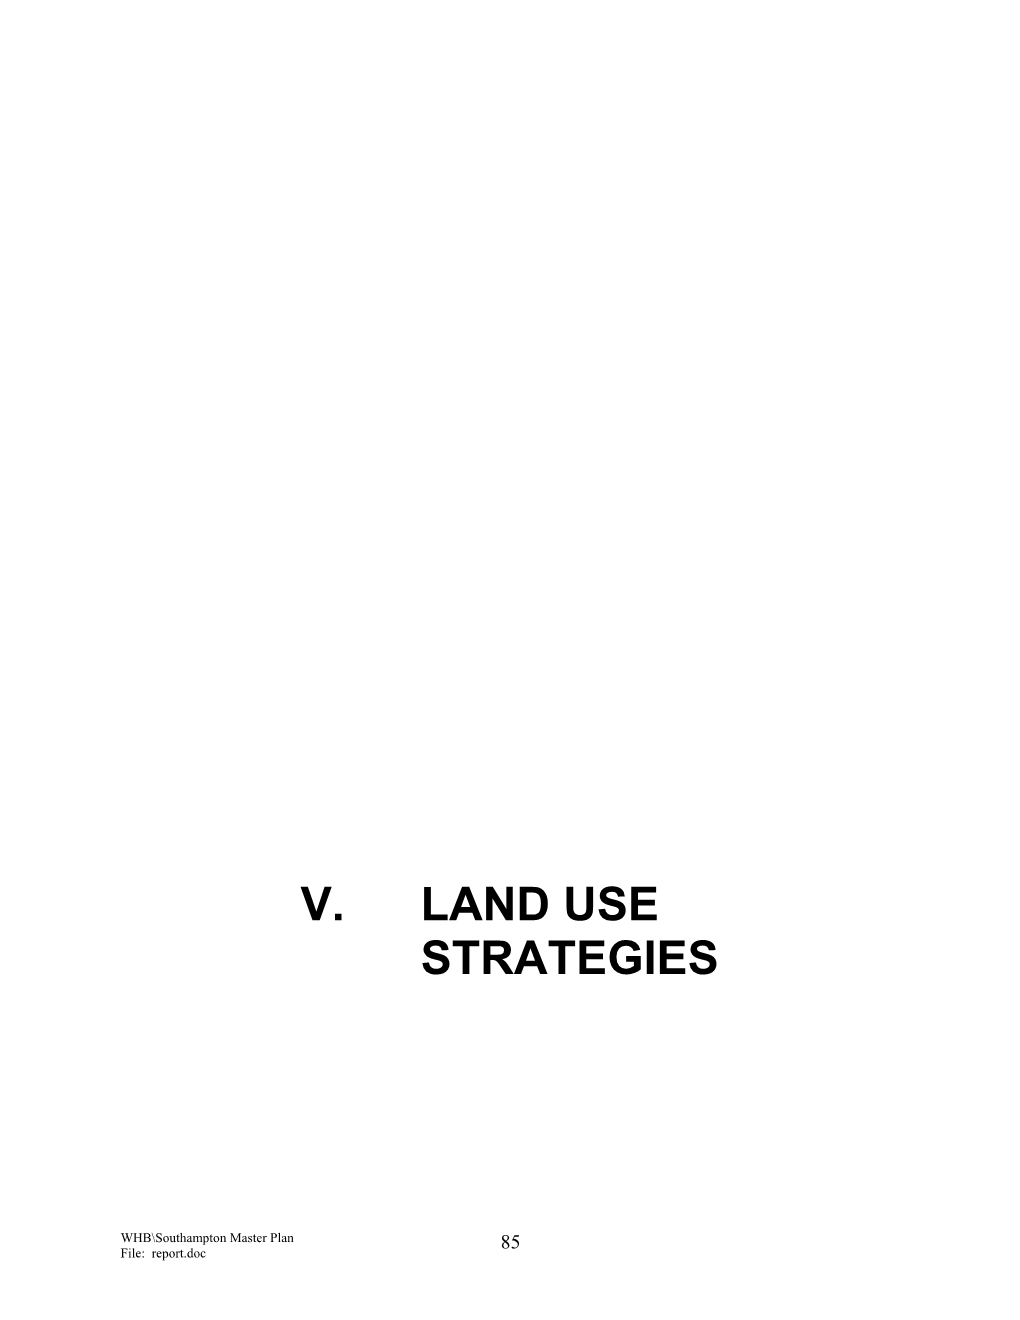 V. Land Use Strategies (PDF)